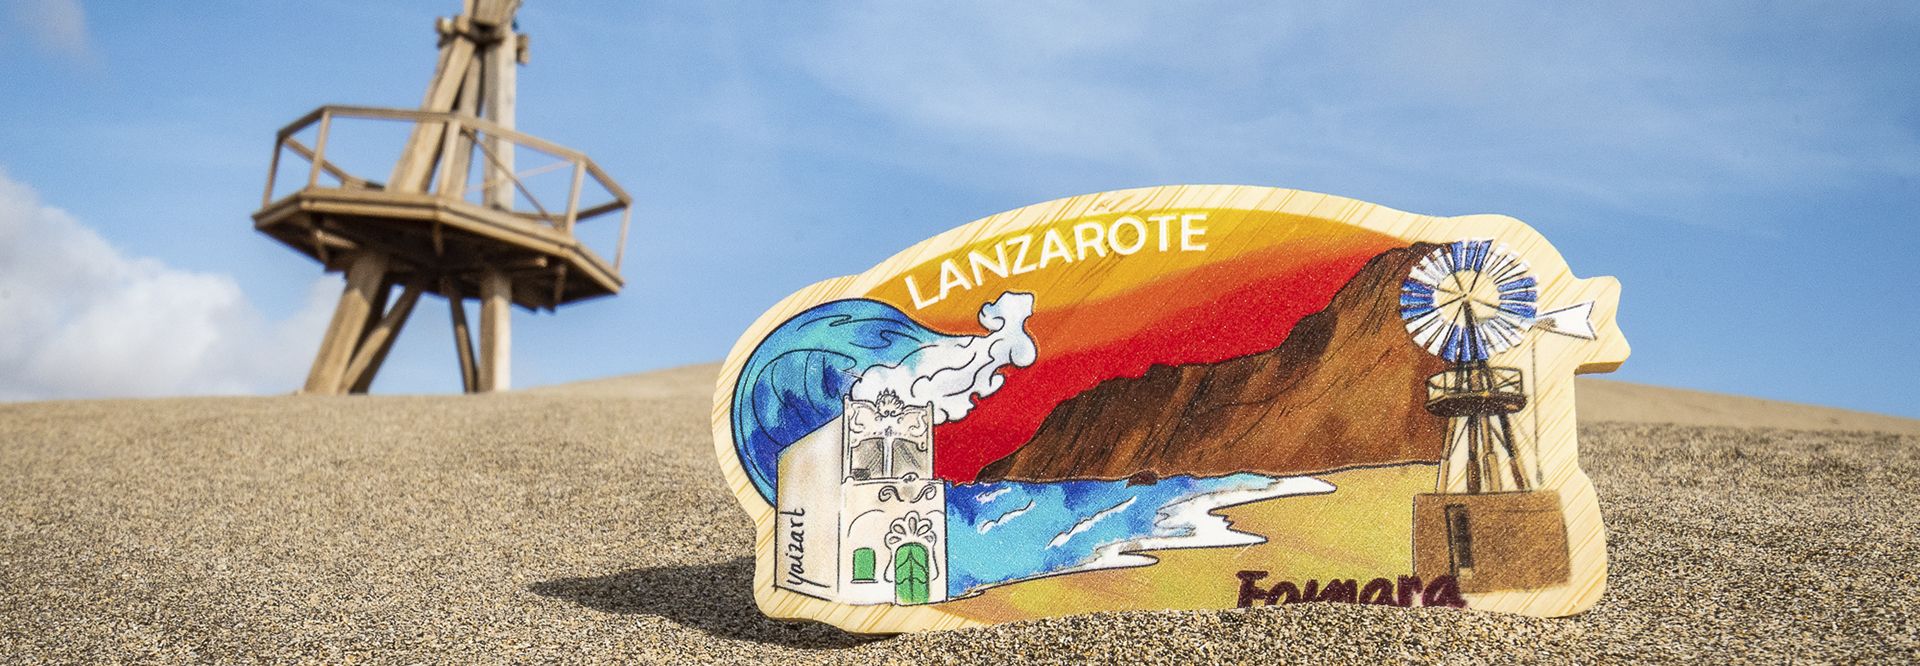 Conoce la cultura de Famara. Guía de planes, cultura y arte de Lanzarote.